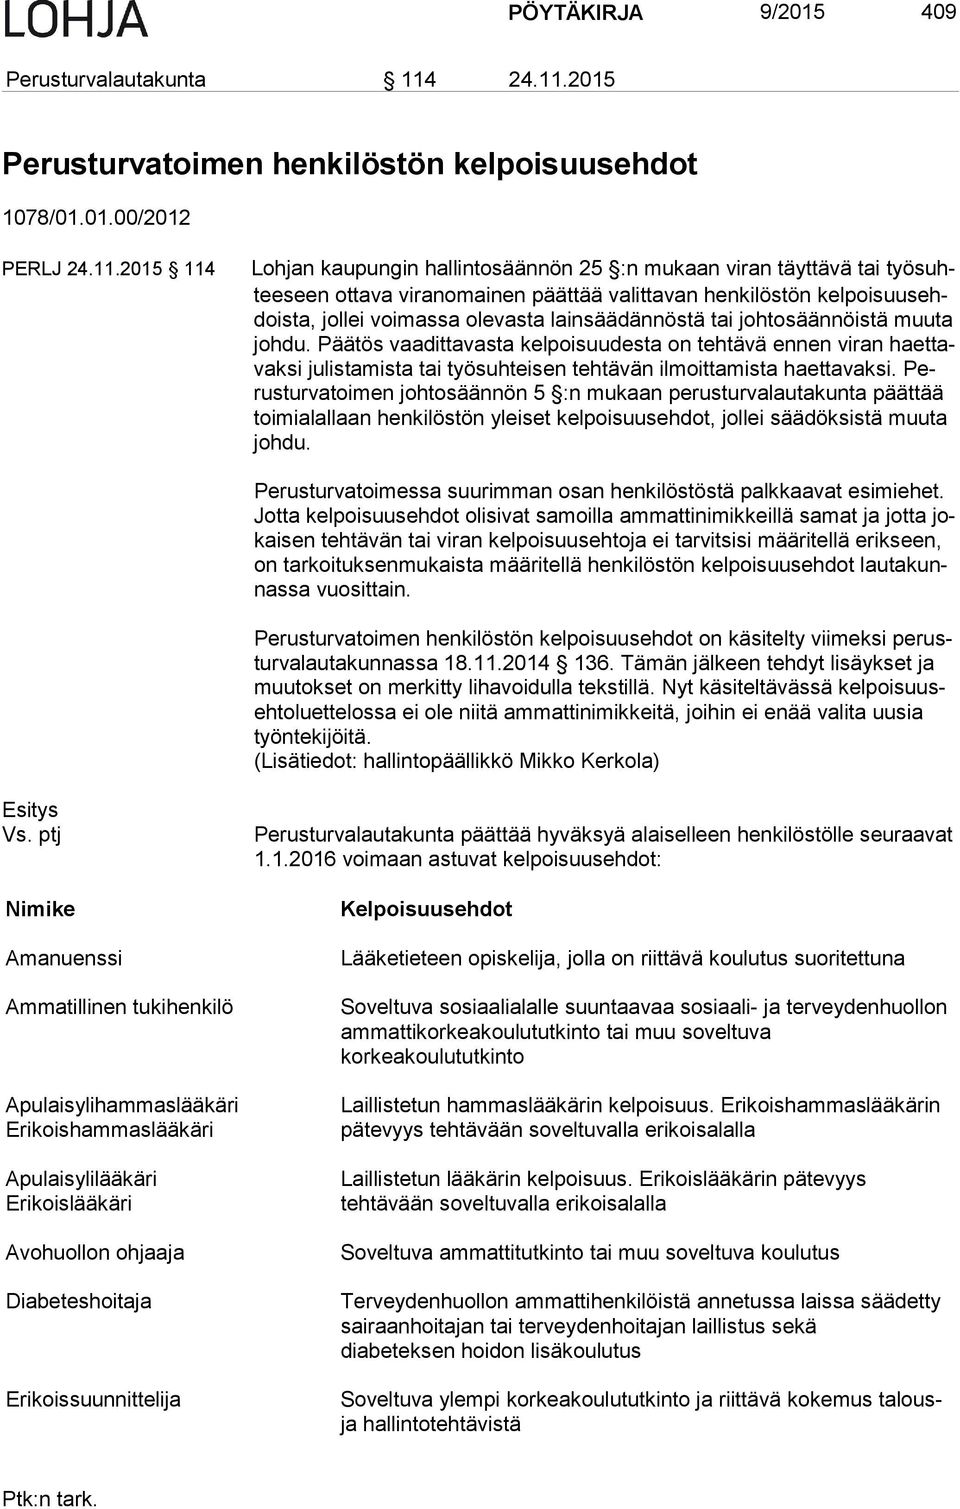 2015 Perusturvatoimen henkilöstön kelpoisuusehdot 1078/01.01.00/2012 PERLJ 2015 114 Lohjan kaupungin hallintosäännön 25 :n mukaan viran täyttävä tai työ suhtee seen ottava viranomainen päättää